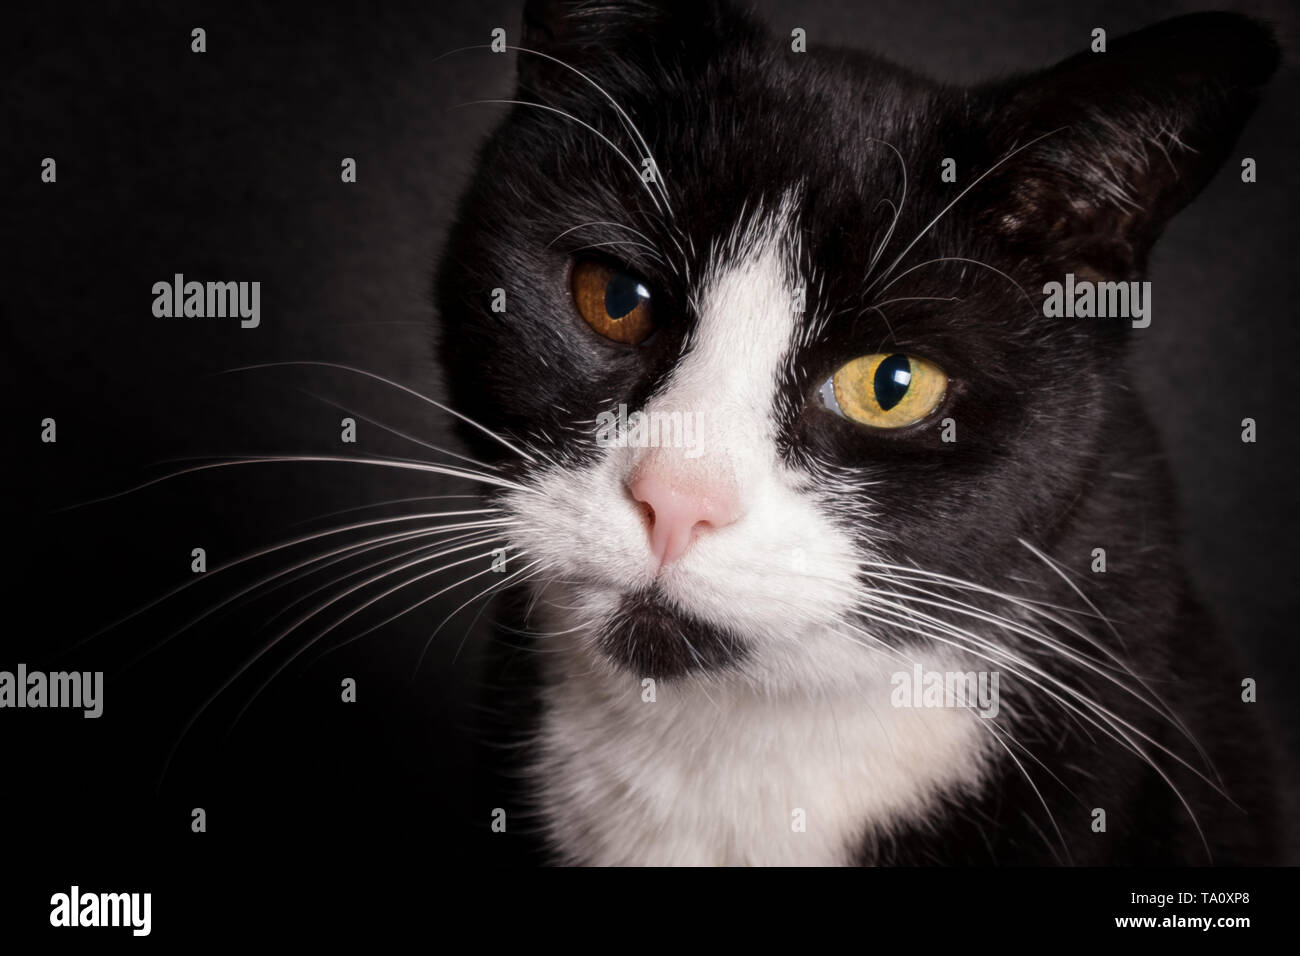 Ritratto di bianco e nero gatto con occhi bicolore guardando la fotocamera Foto Stock